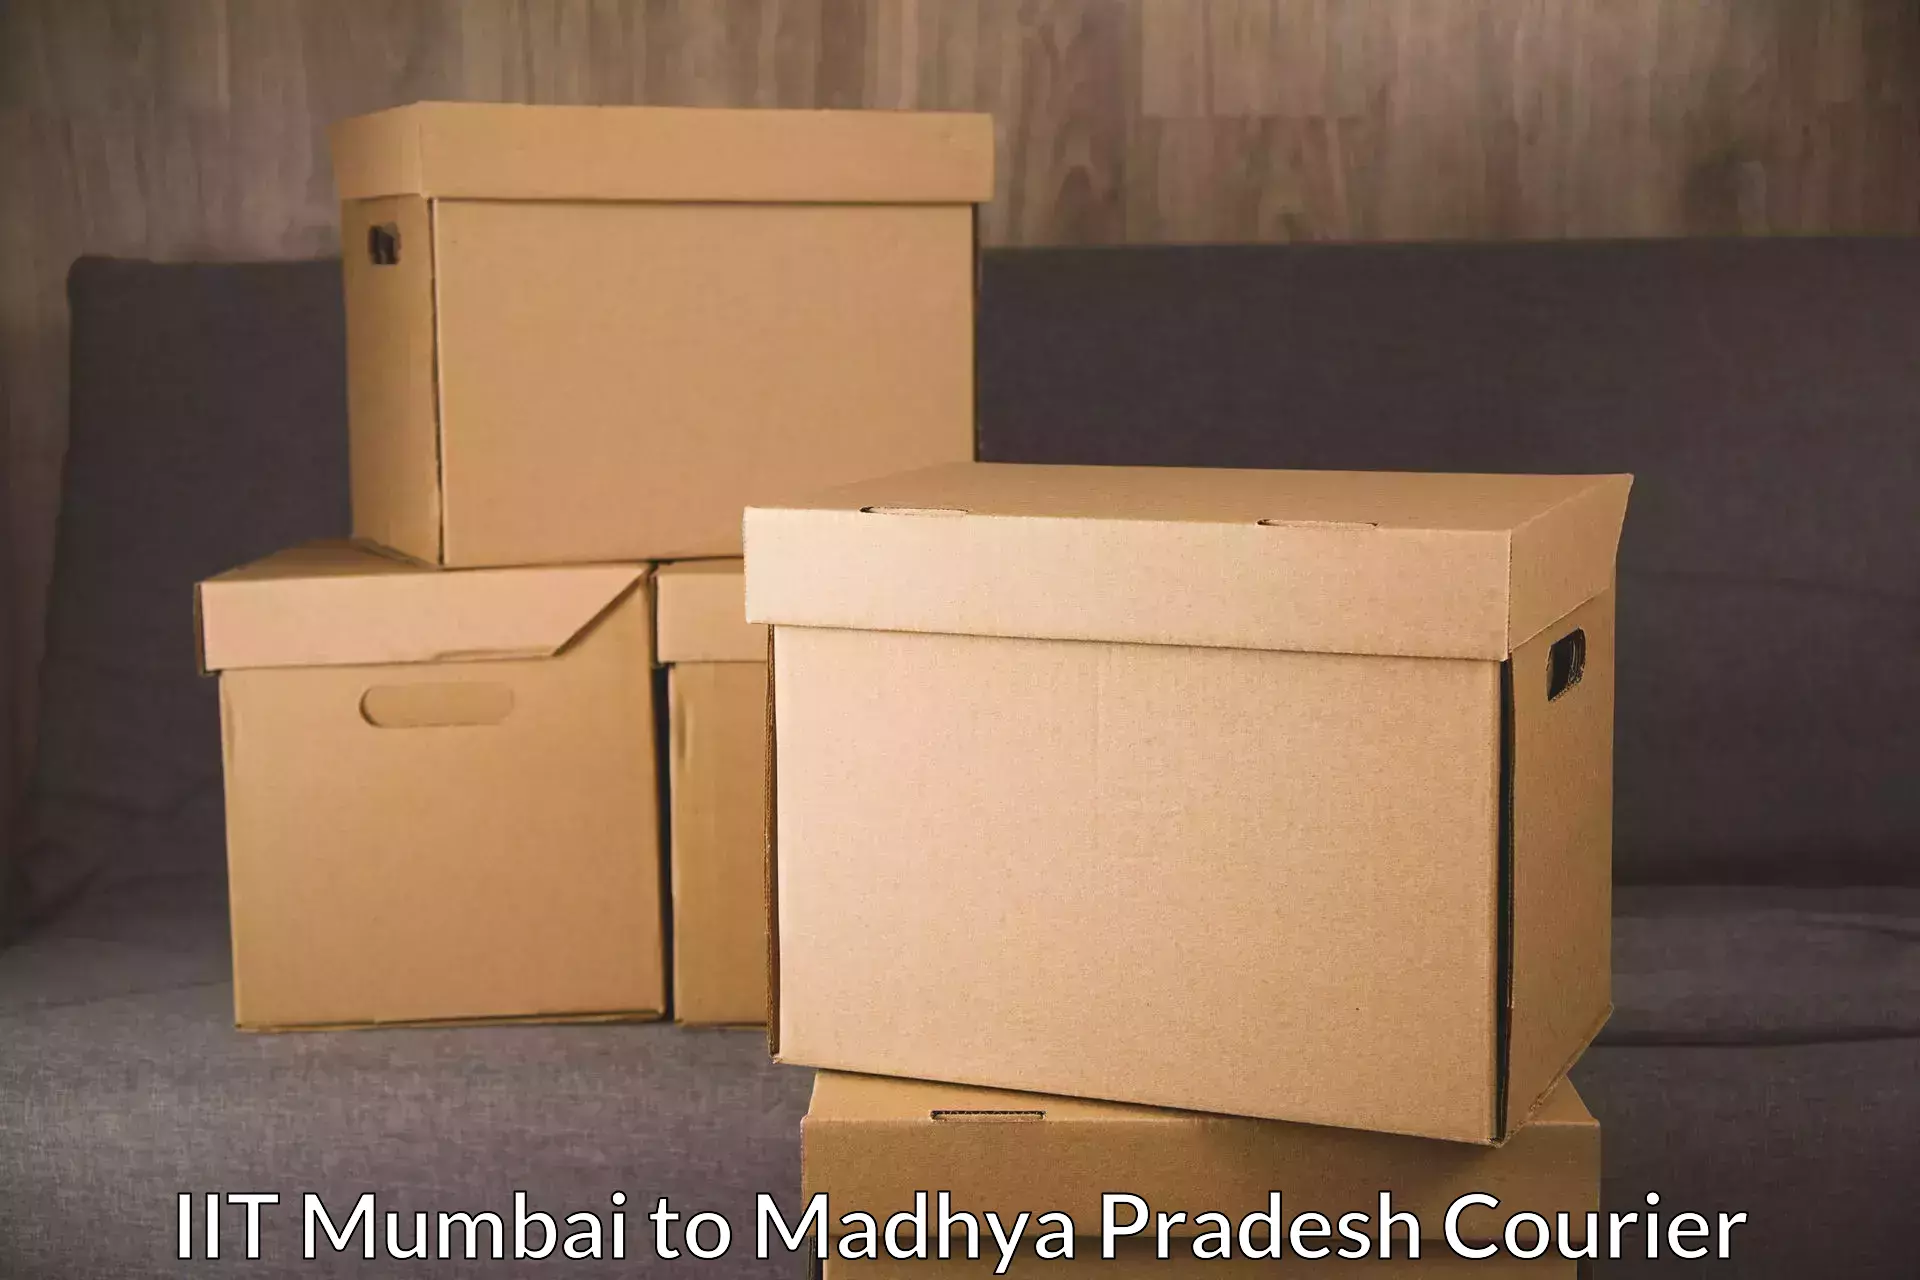 Digital courier platforms IIT Mumbai to Vijayraghavgarh